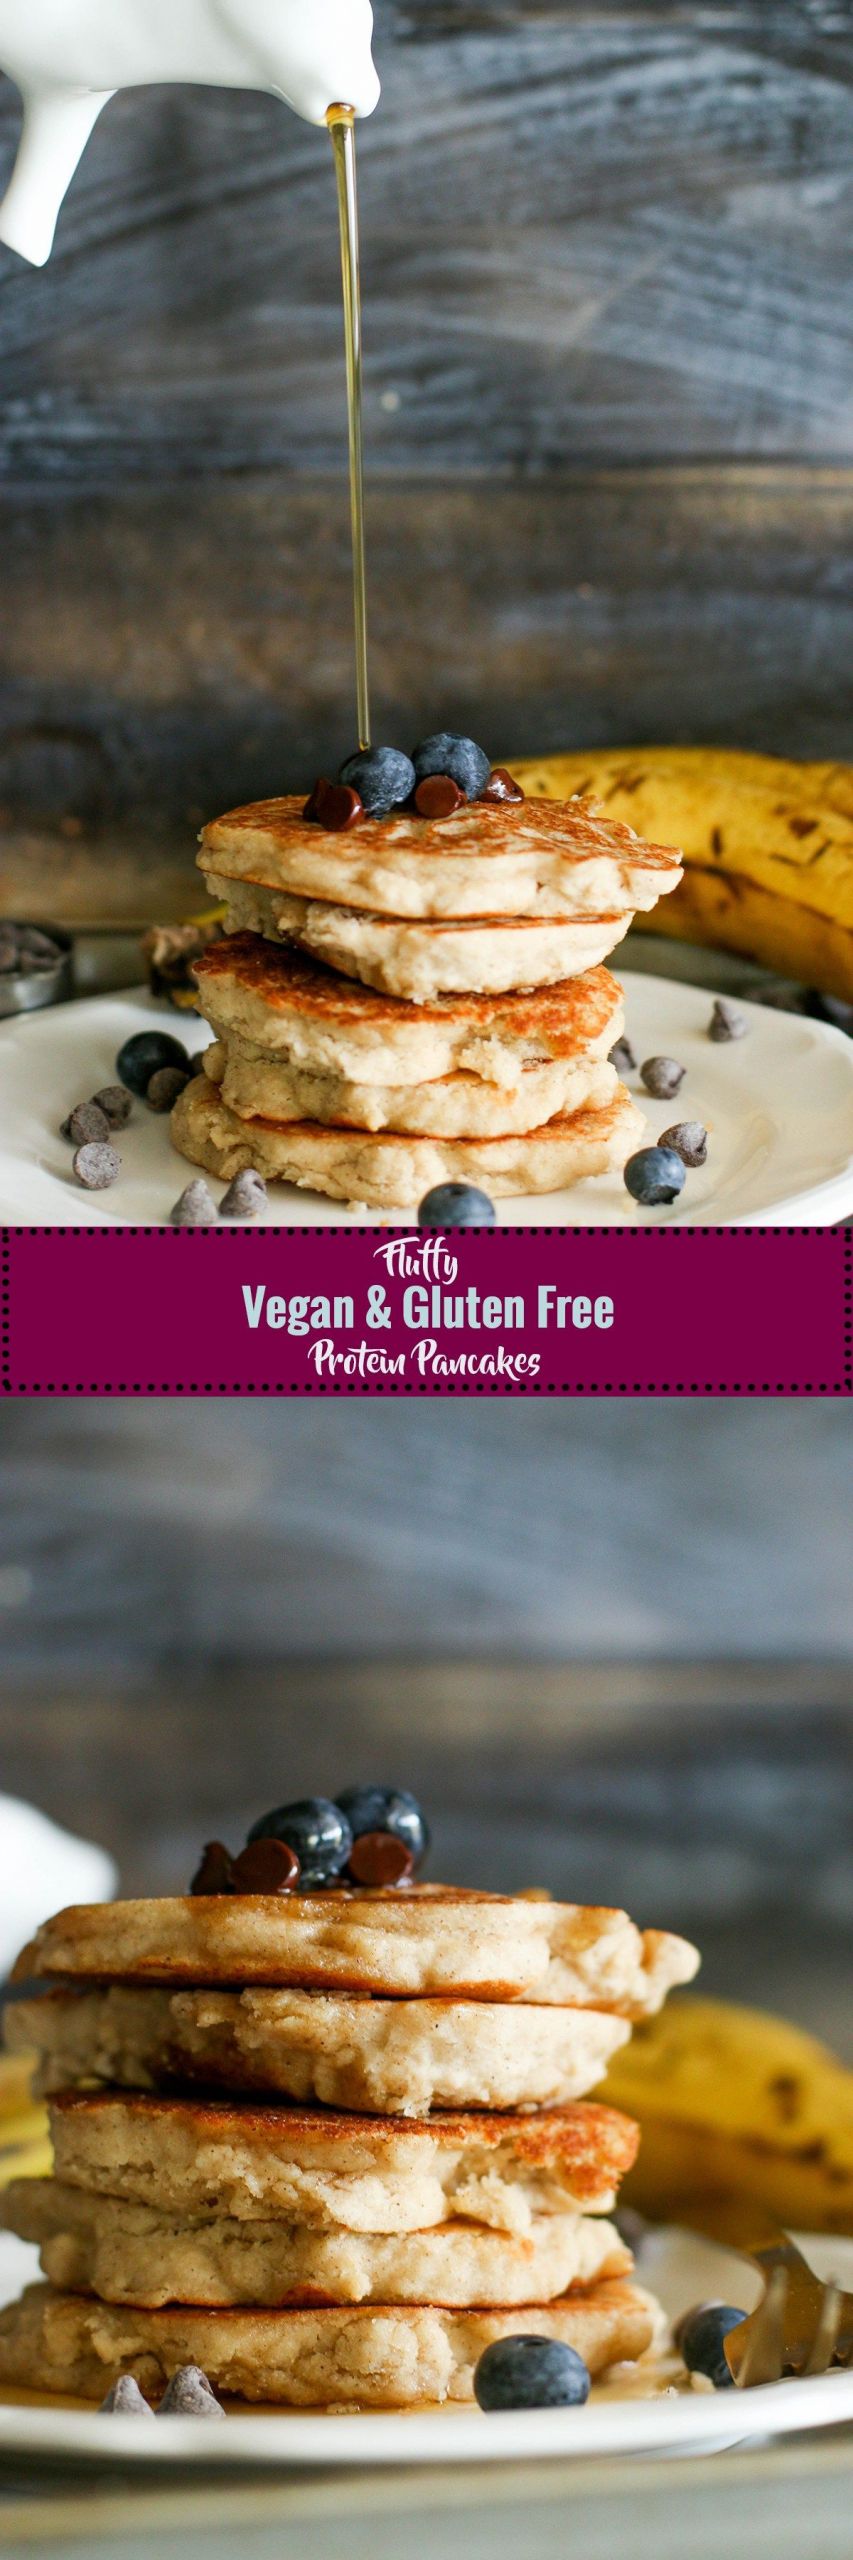 Vegan Gluten Free Brunch Recipes
 Fluffy Vegan & Gluten Free Protein Pancakes